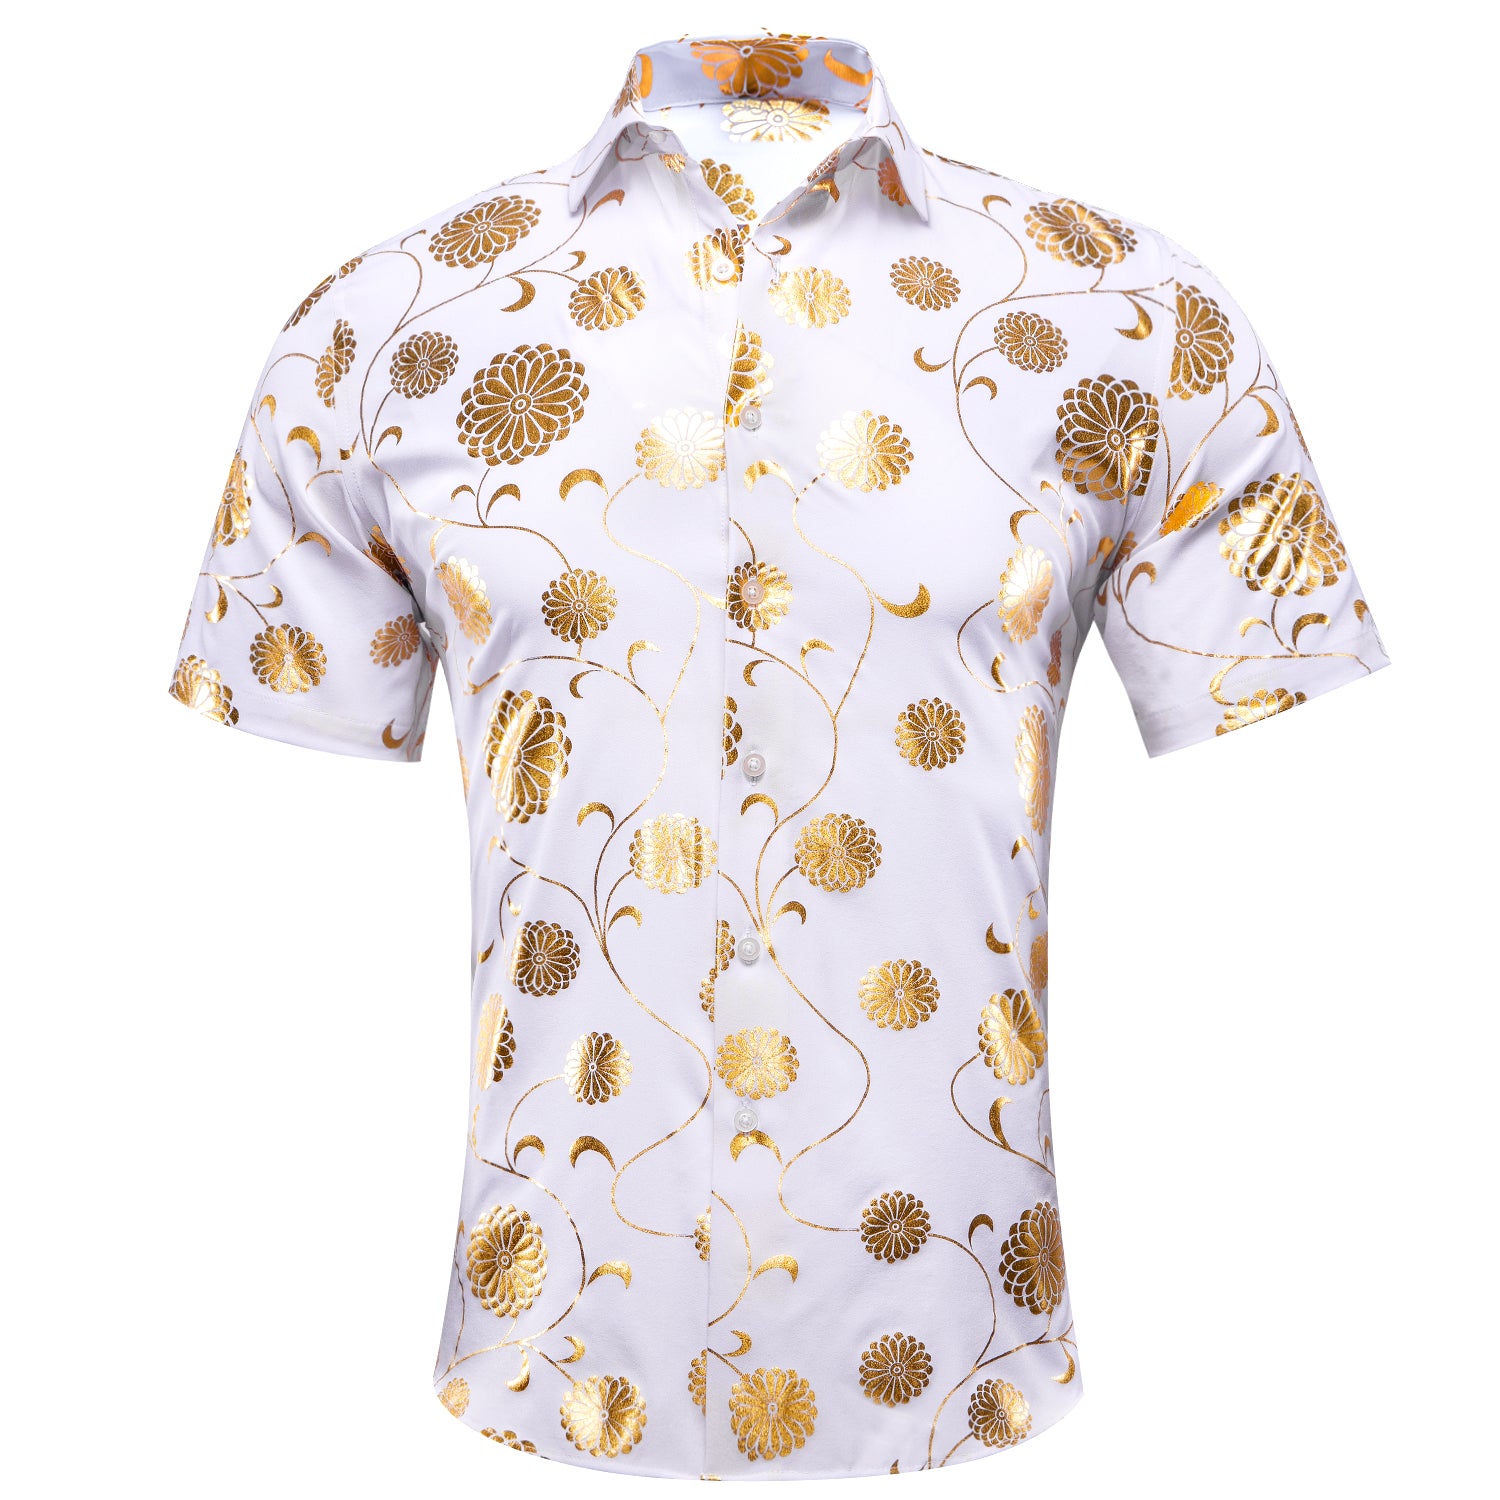 New White Champagne Flower Men's Short Sleeve Shirt